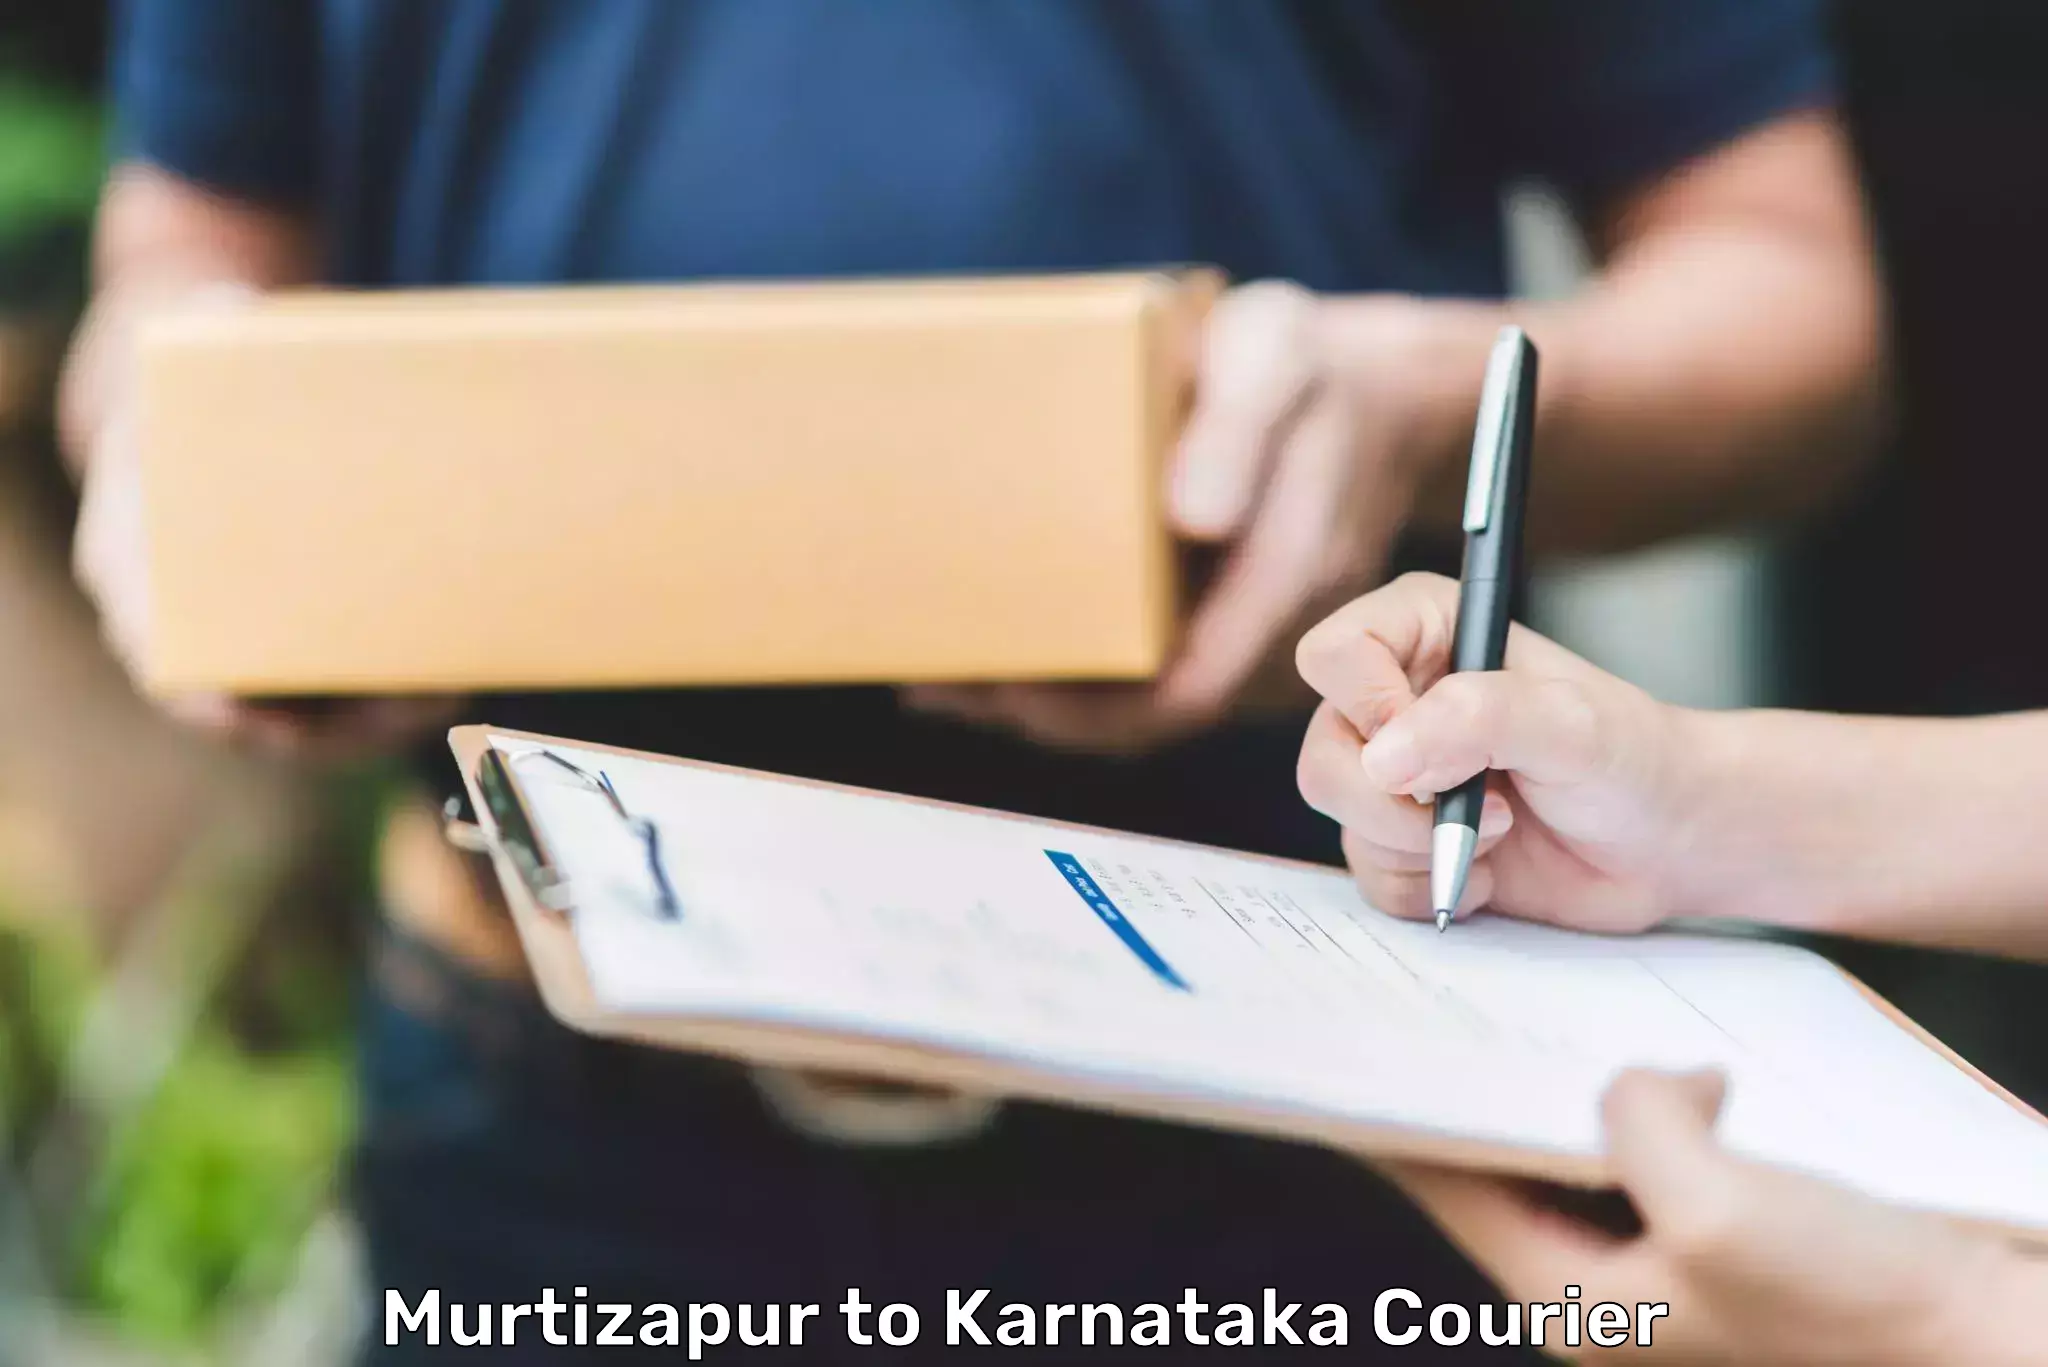 Courier service comparison Murtizapur to Chincholi